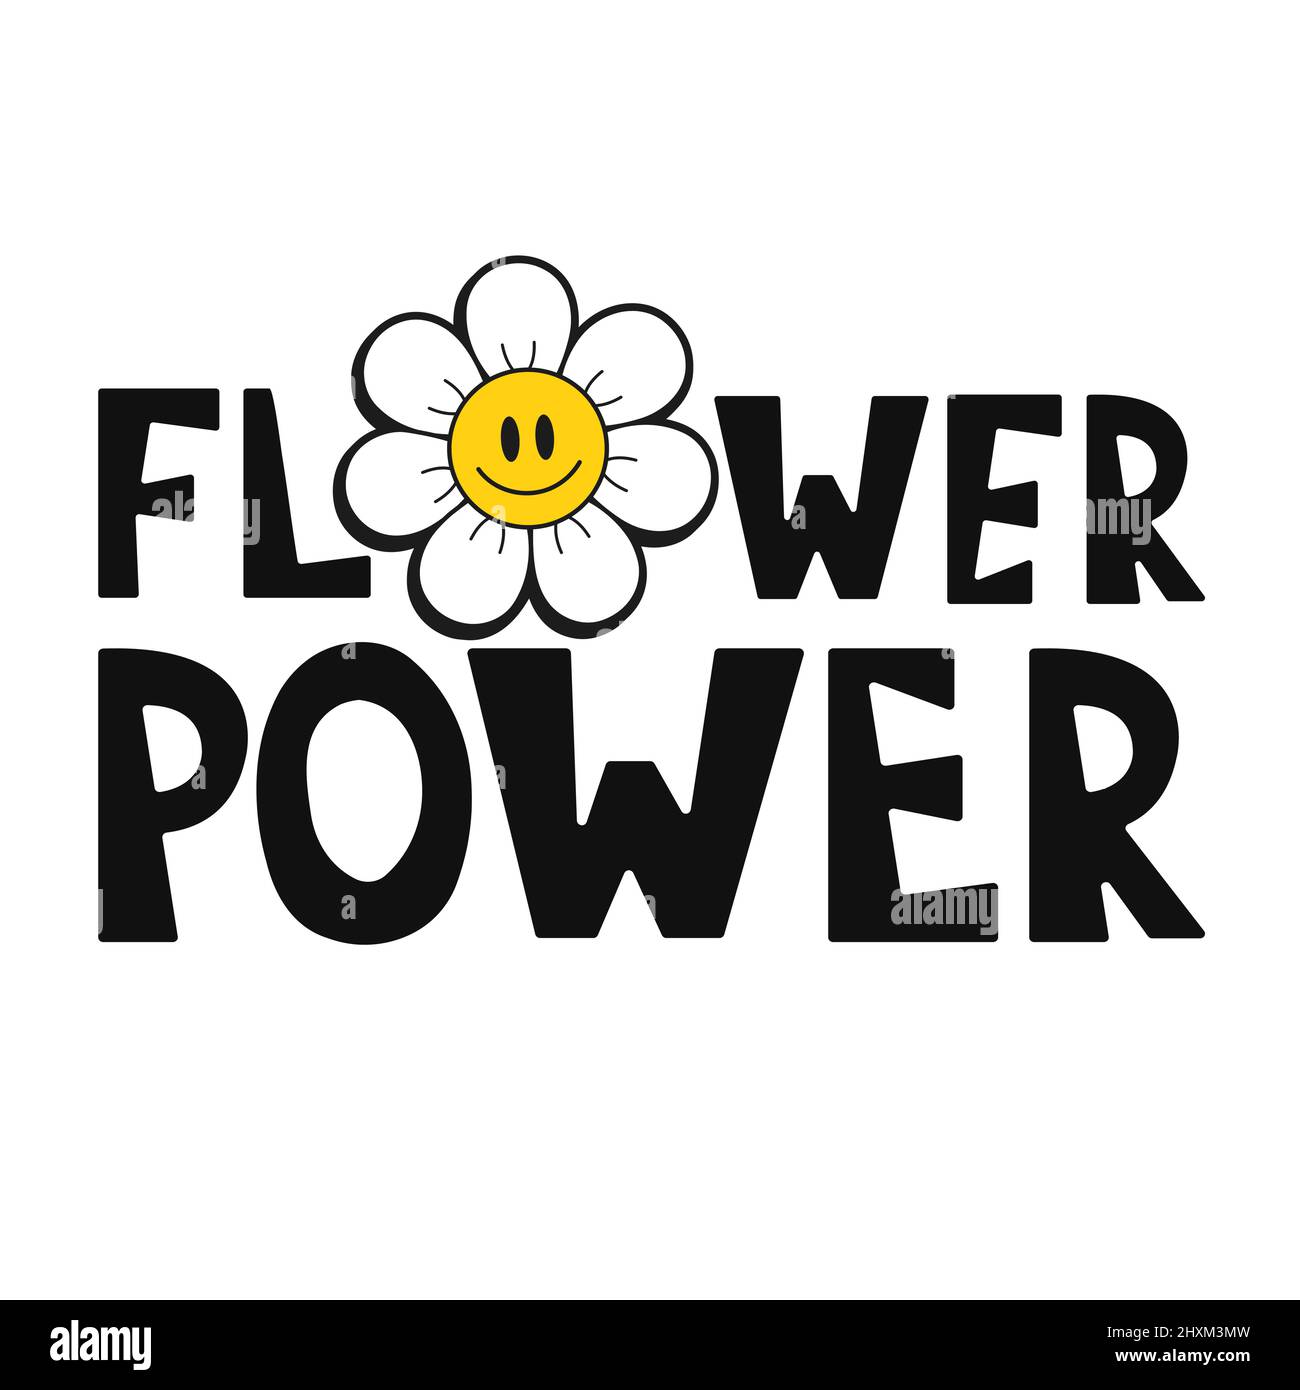 Smile emoji visage en fleur t-shirt imprimé design.Fleur power slogan.Vector main dessiné dessin animé logo illustration.hippie visage de sourire,60s,70s,groovy mode imprimé pour t-shirt,concept d'affiche Illustration de Vecteur